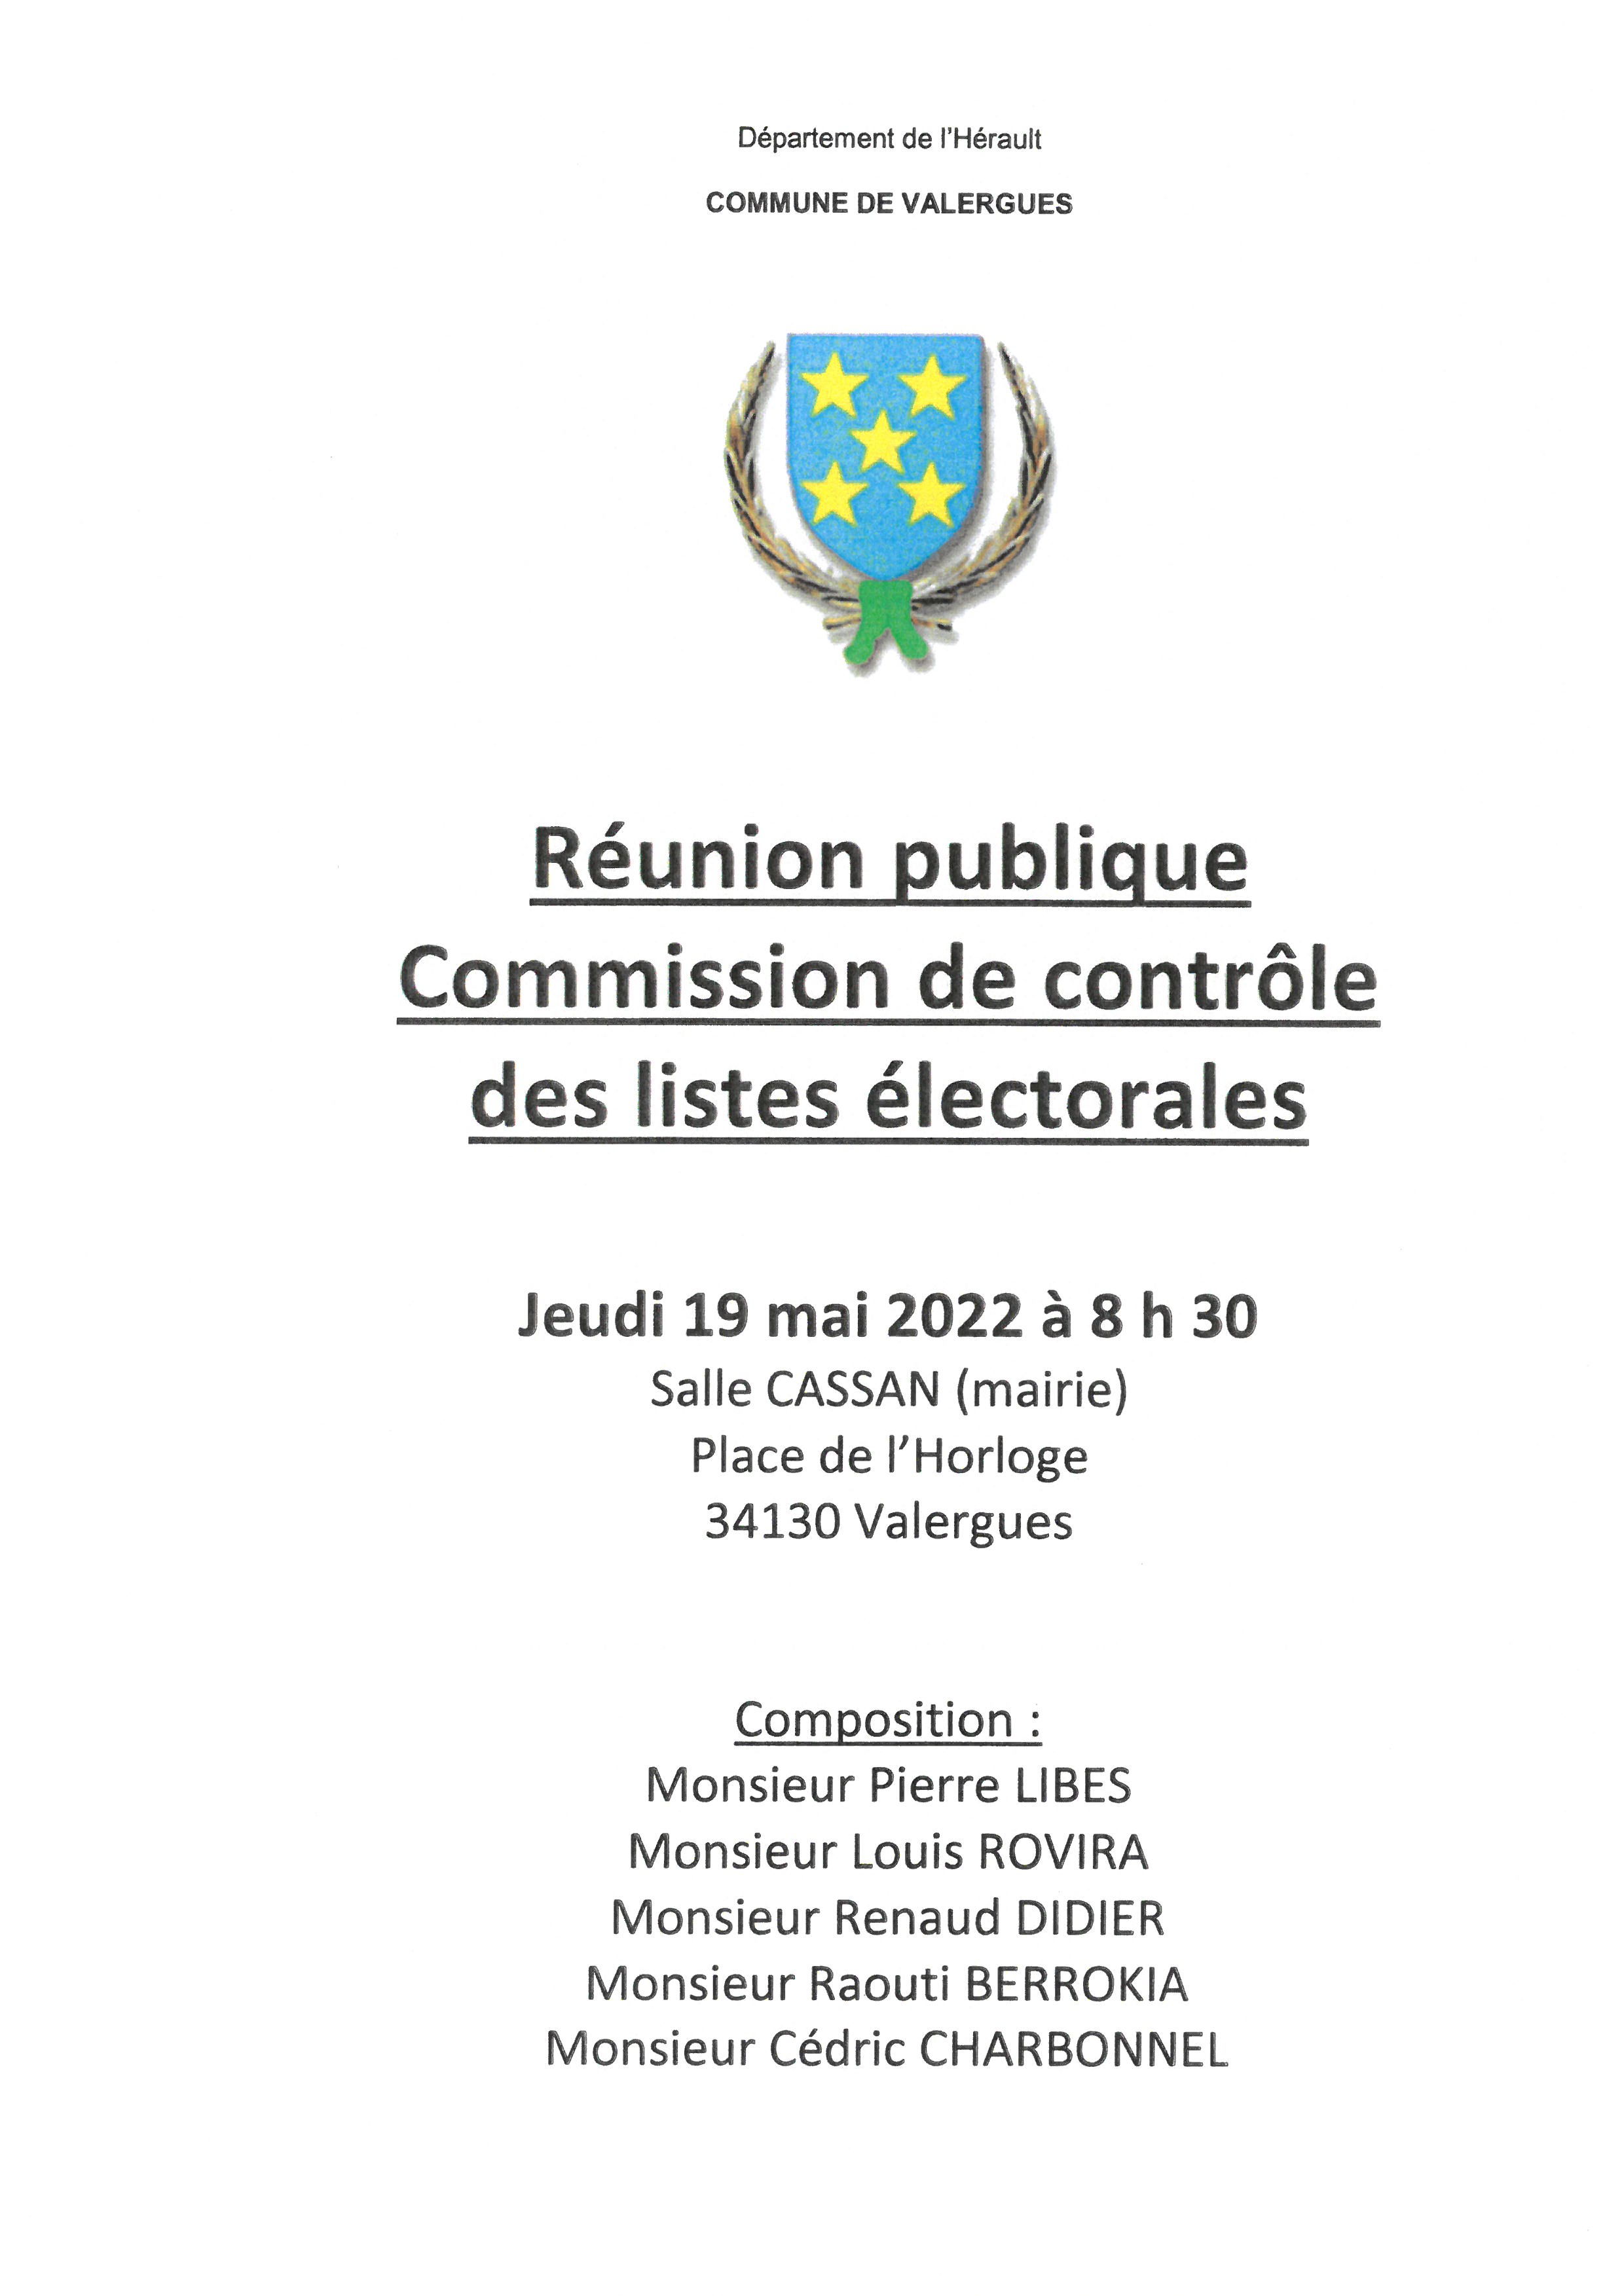 Réunion publique Commission de contrôle des listes électorales